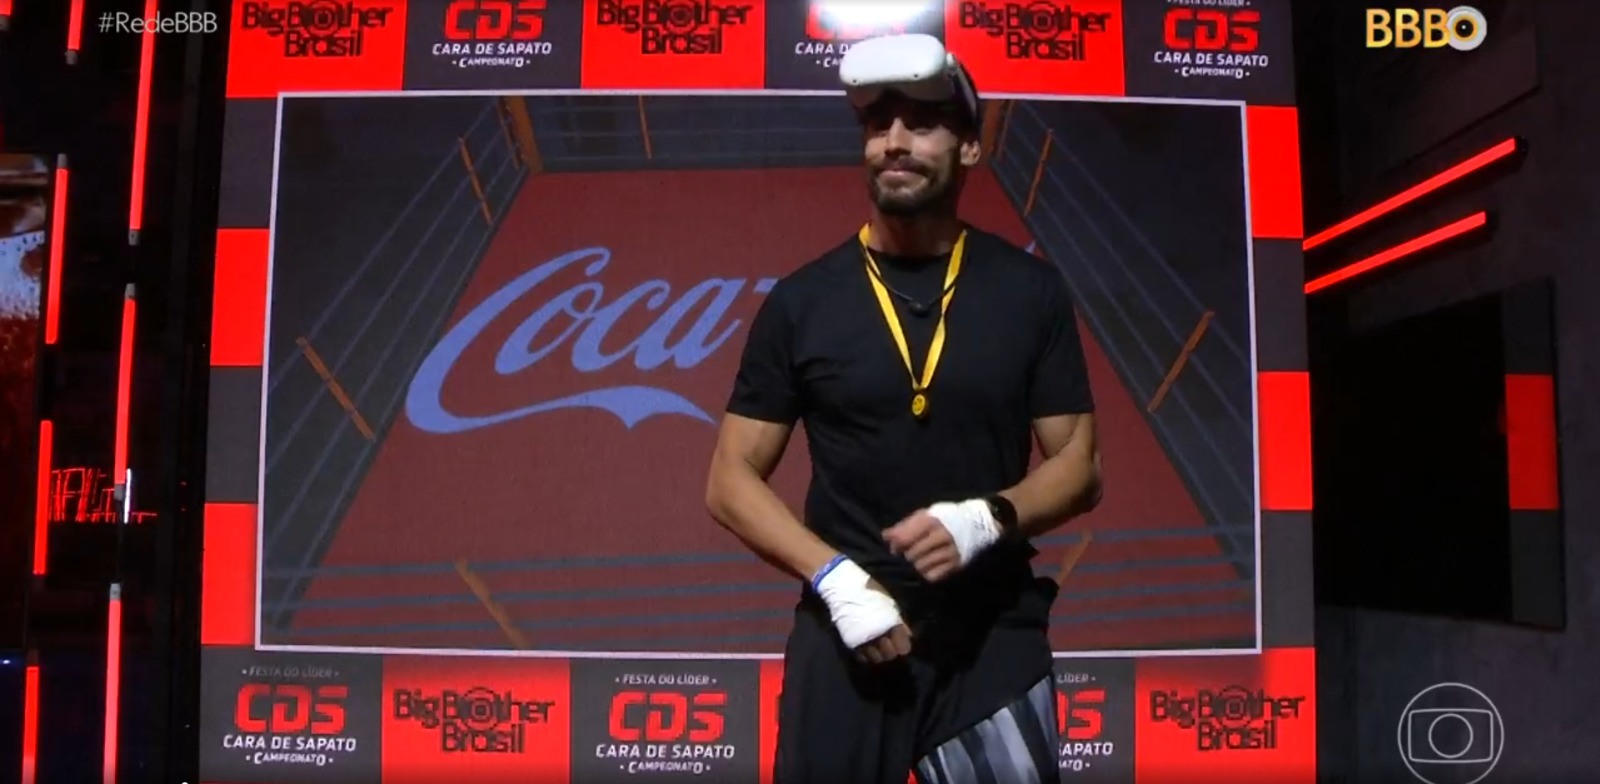 Momento Coca-Cola no 'BBB23' leva diversão com um “campeonato virtual” na Festa do Líder Cara de Sapato